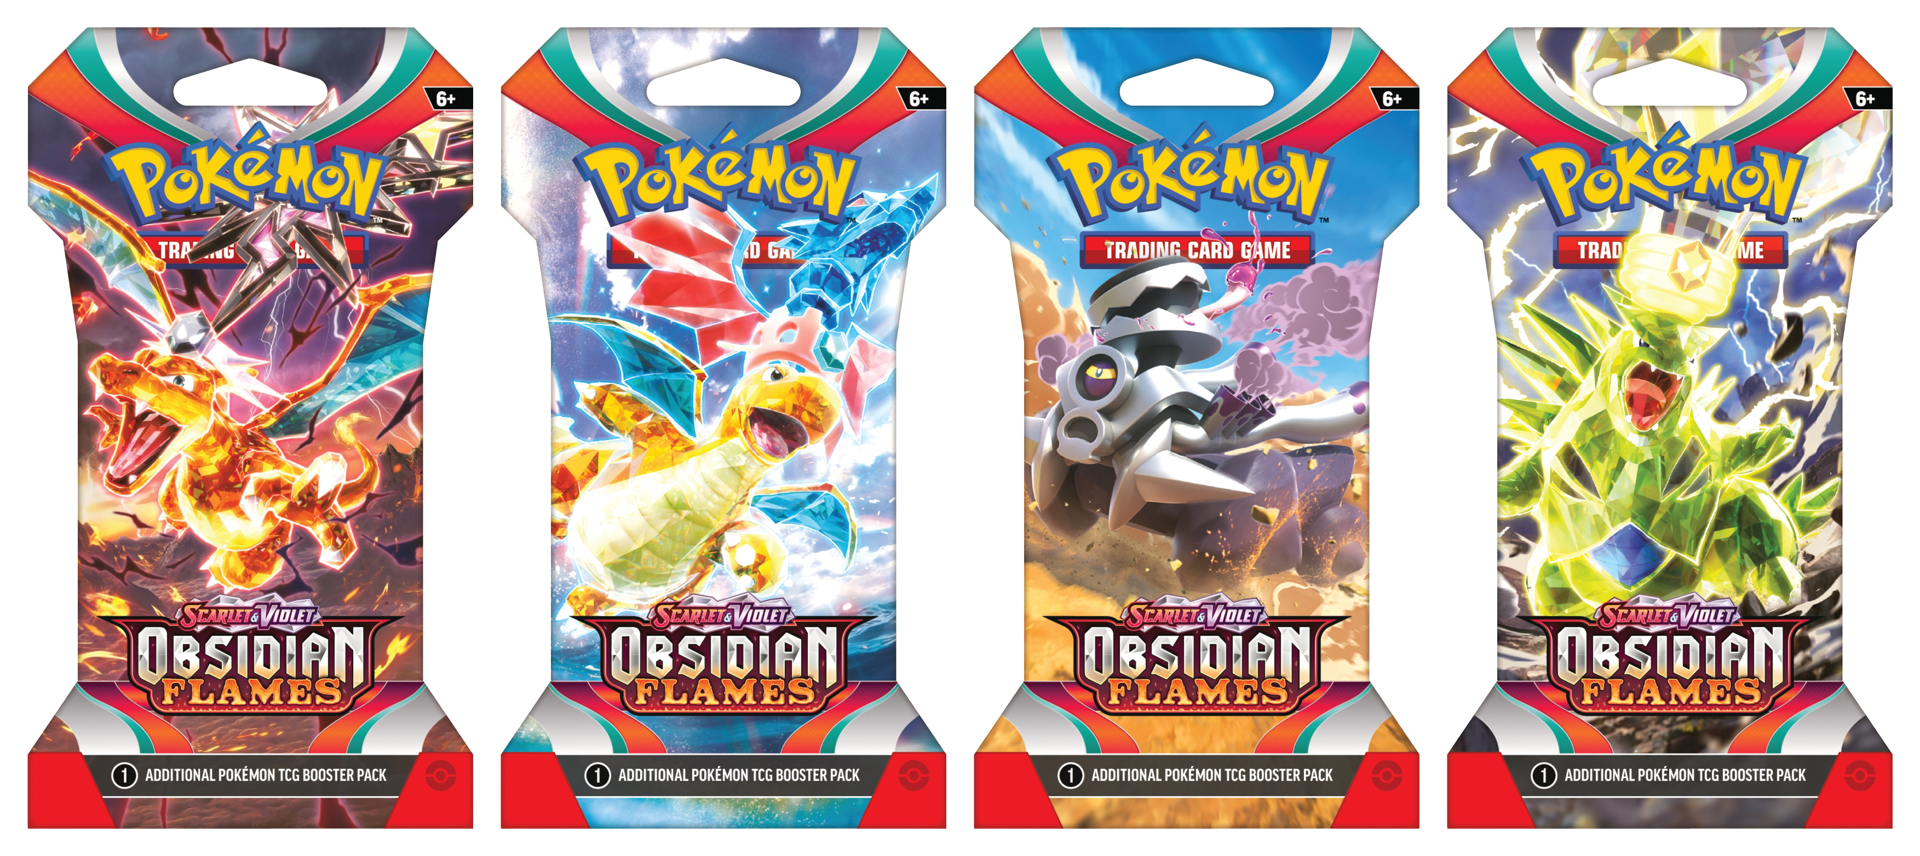 Pokémon JCC - Écarlate et Violet - Pack de Booster Blister Flammes Obsidiennes (1 Booster aléatoire)